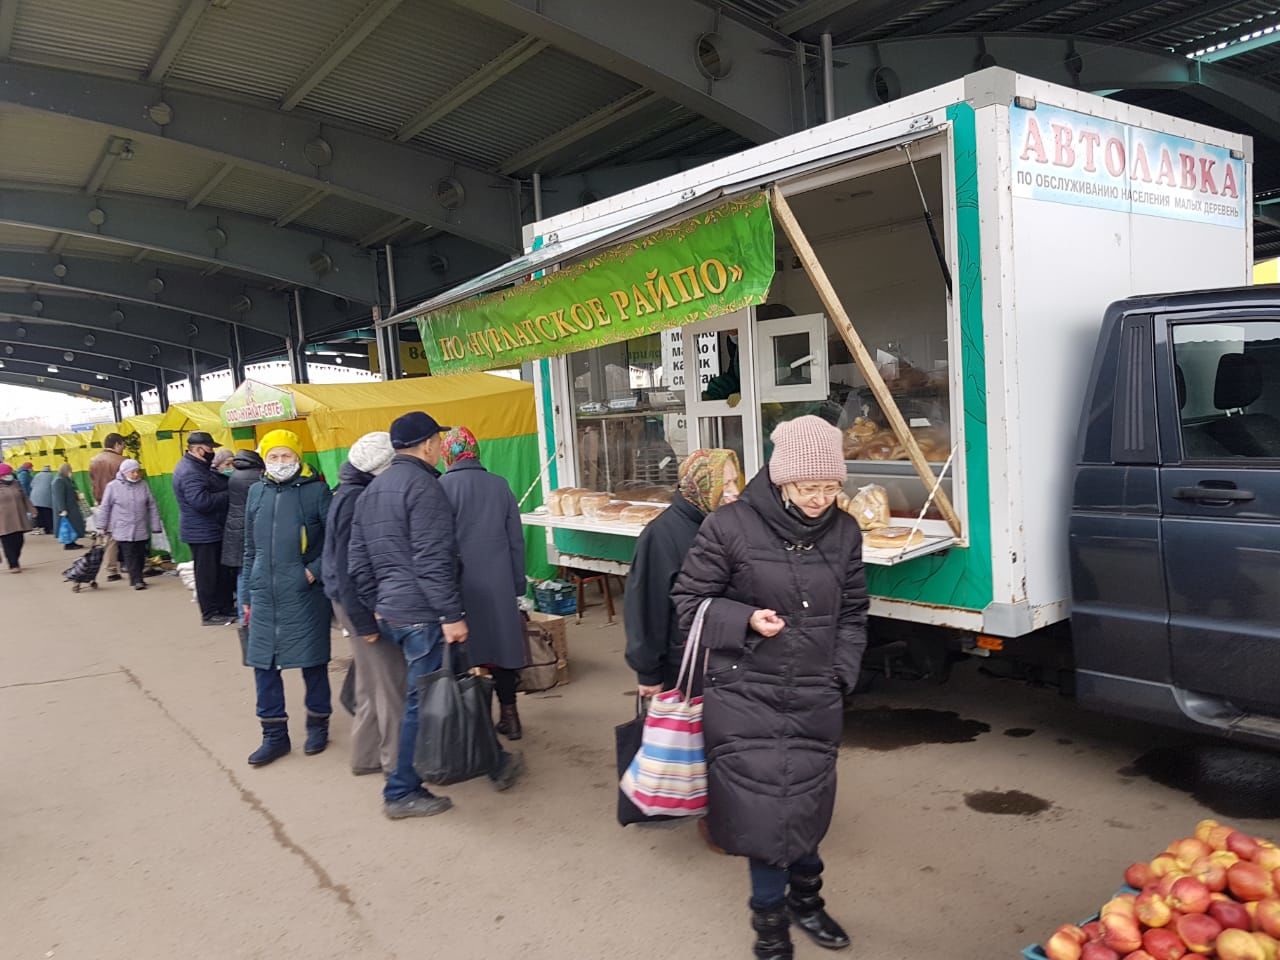 Нурлатцы предлагают широкий ассортимент продукции в сельхозярмарке в Казани